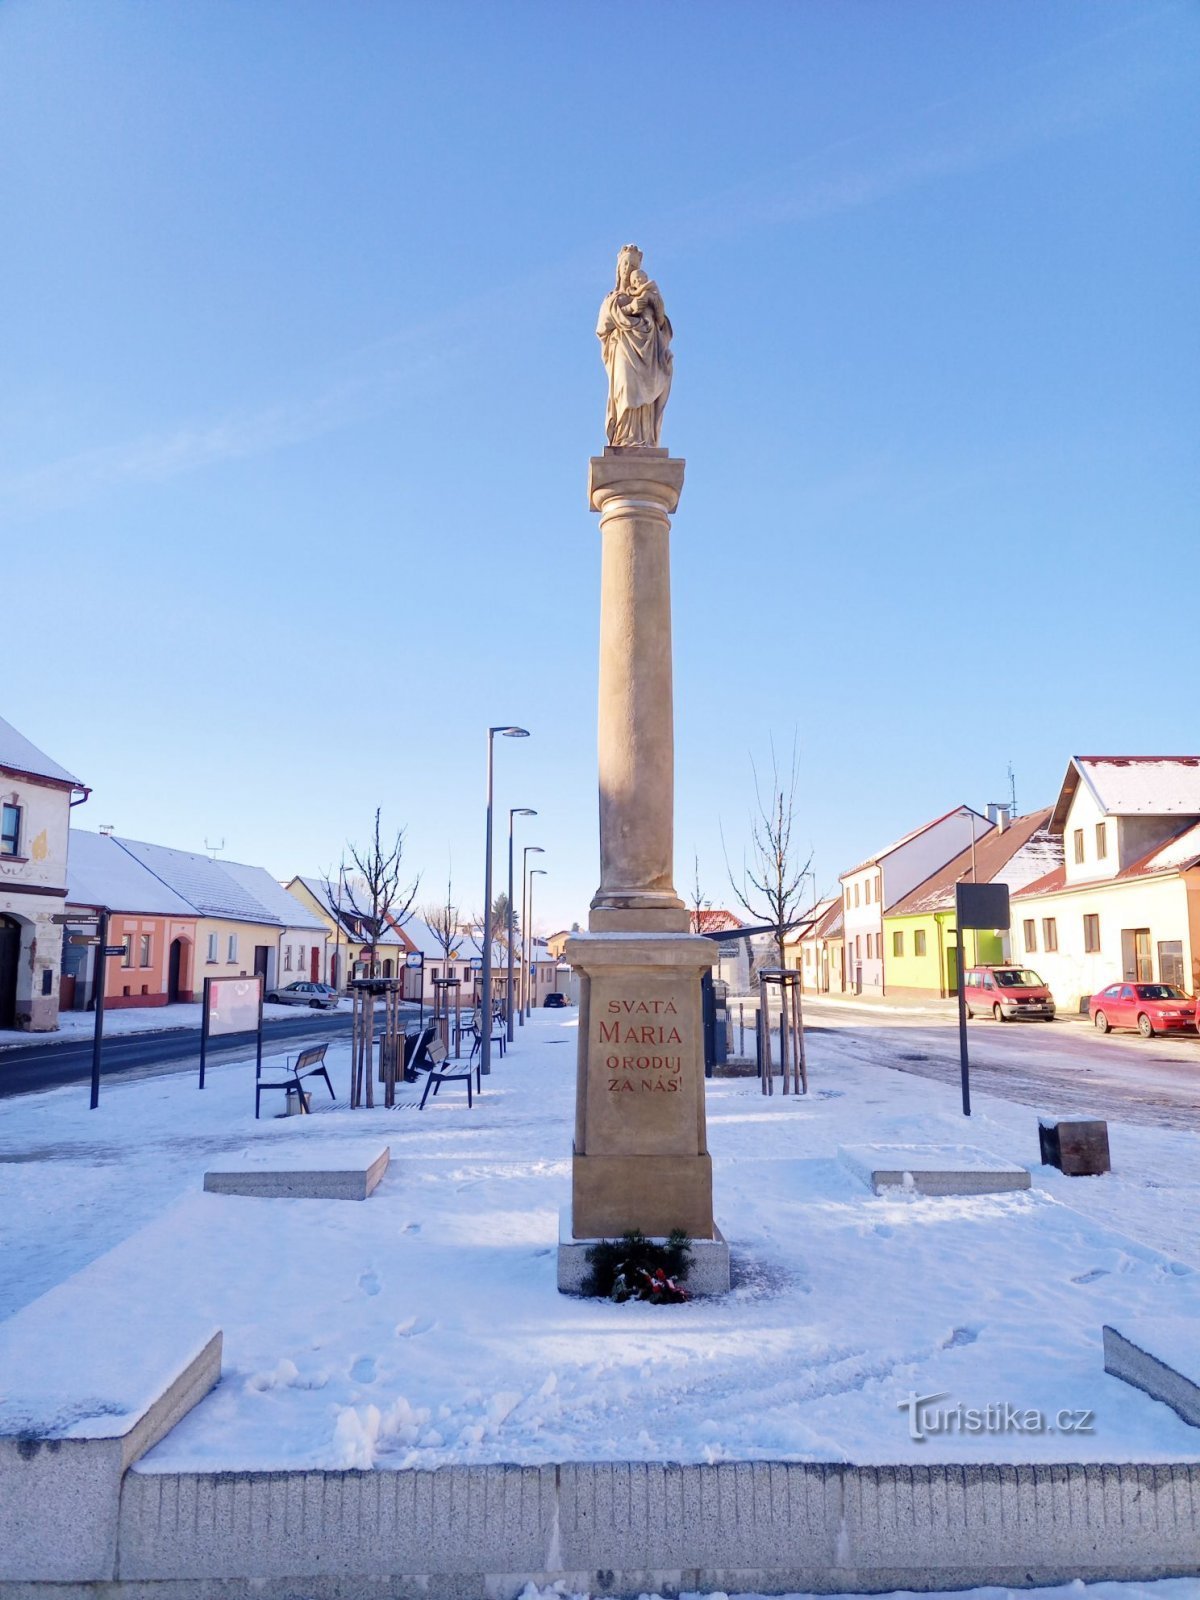 1. Μια στήλη της Τοσκάνης στο Černovice που υψώνεται από μια πρισματική πλίνθο φέρει ένα άγαλμα του Pa